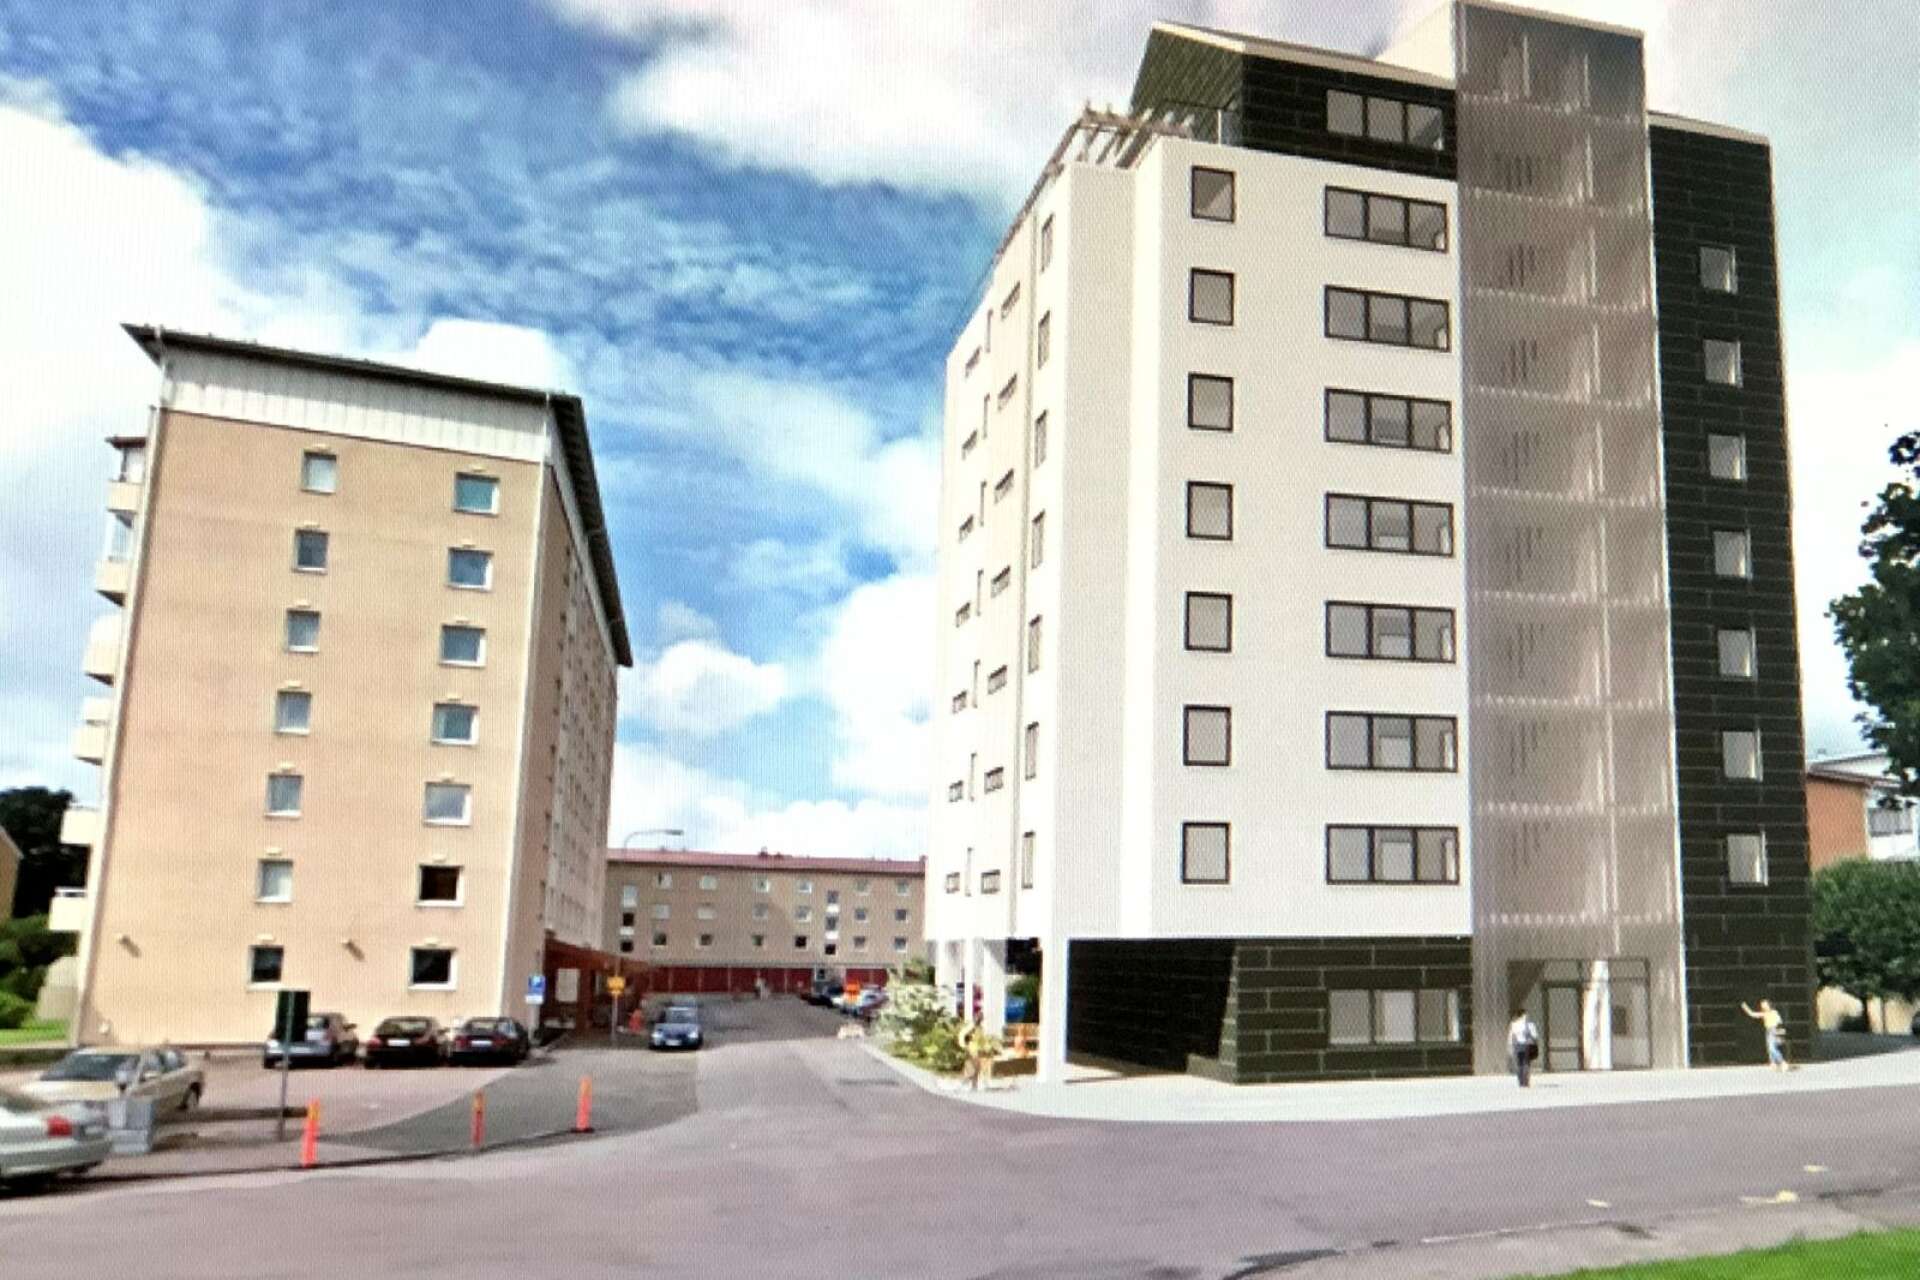 Så här kommer det nya flerbostadshuset på Våxnäs se ut när det står färdigt i början av 2023.